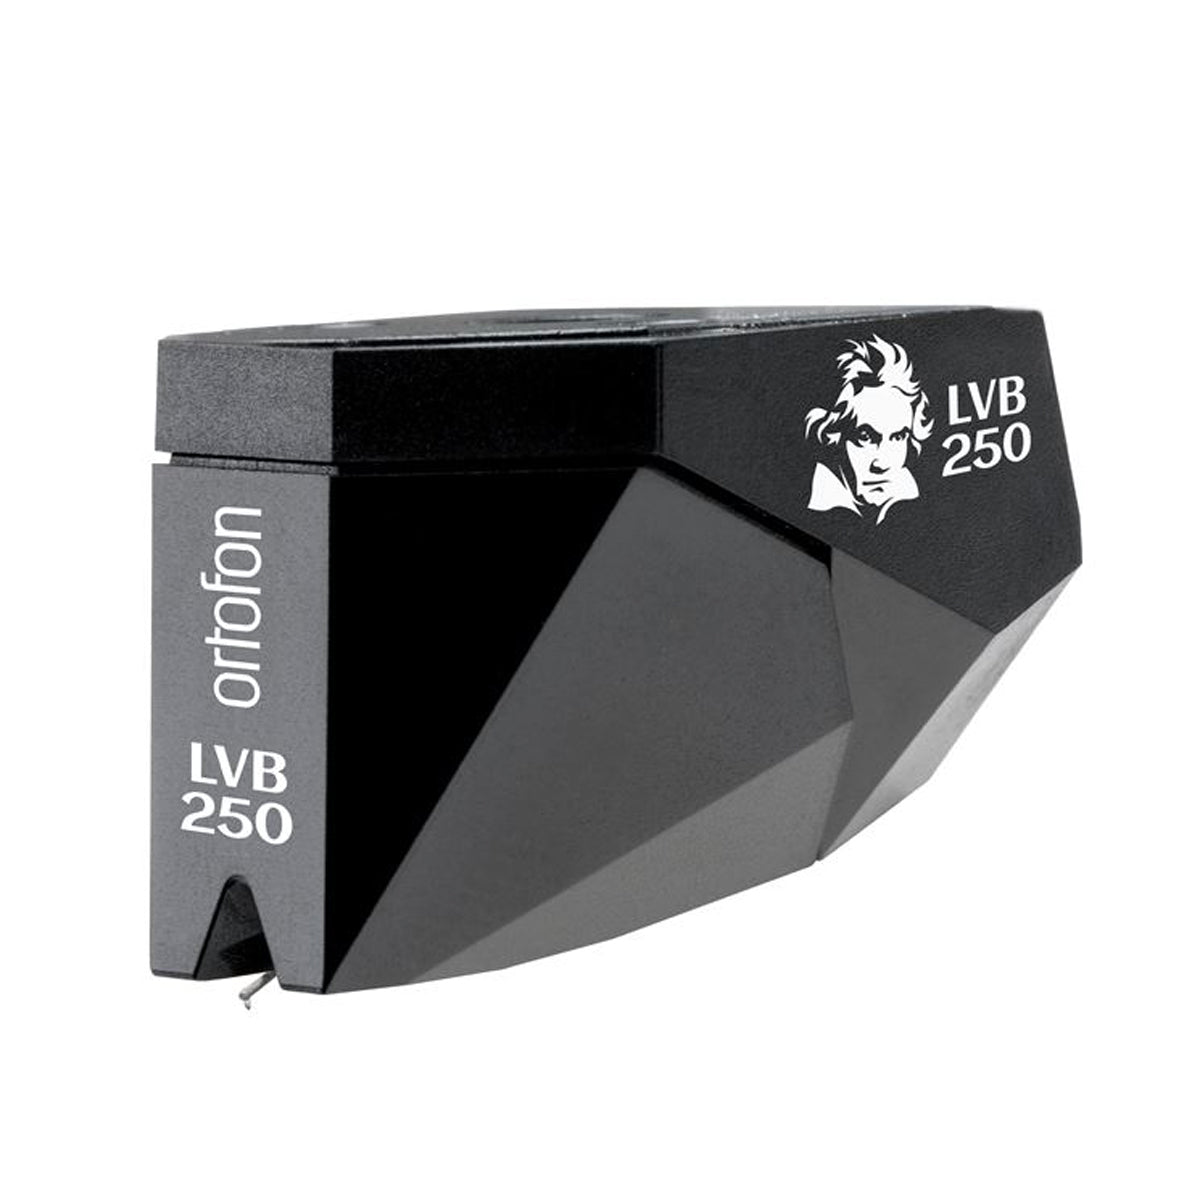 Ortofon Hi-Fi 2M Black LVB 250 Moving Magnet Cartridge (Limited Edition) - The Audio Experts